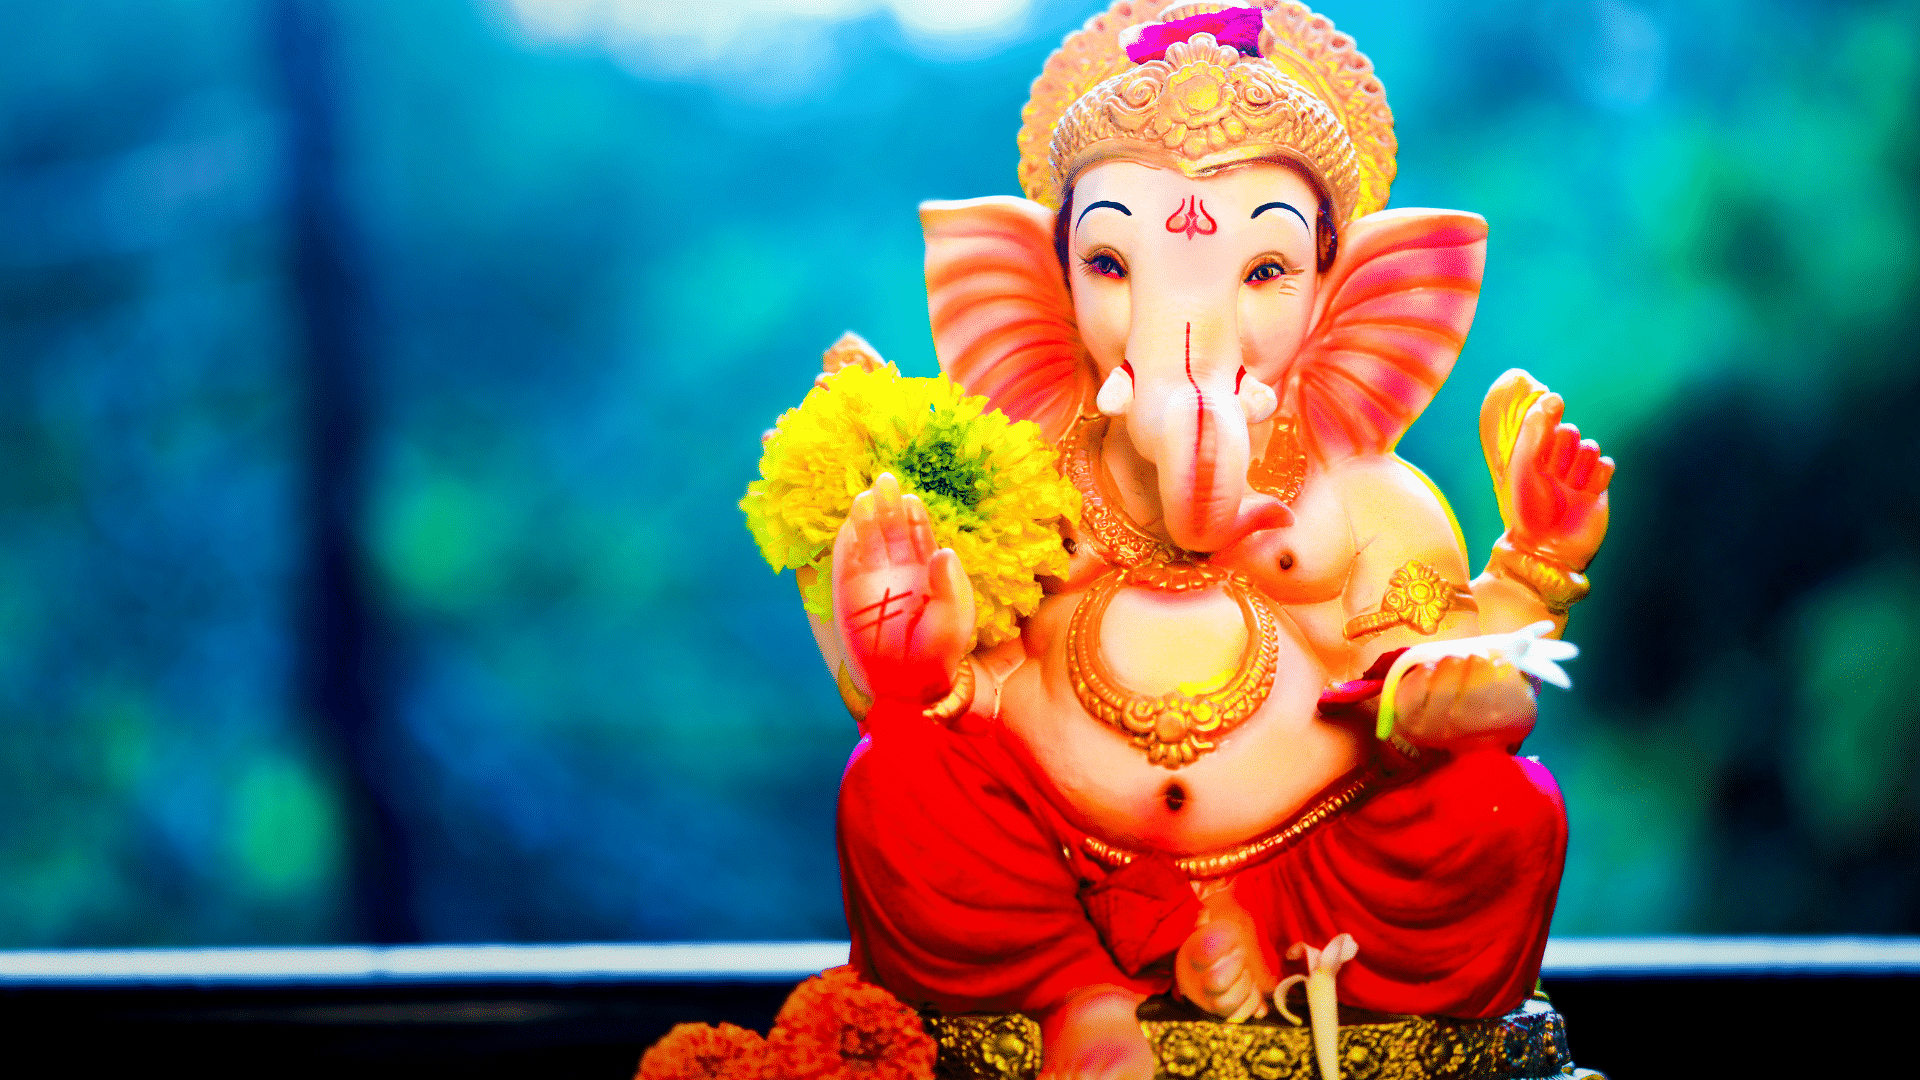  ¿Qué puedes aprender de Ganesha?